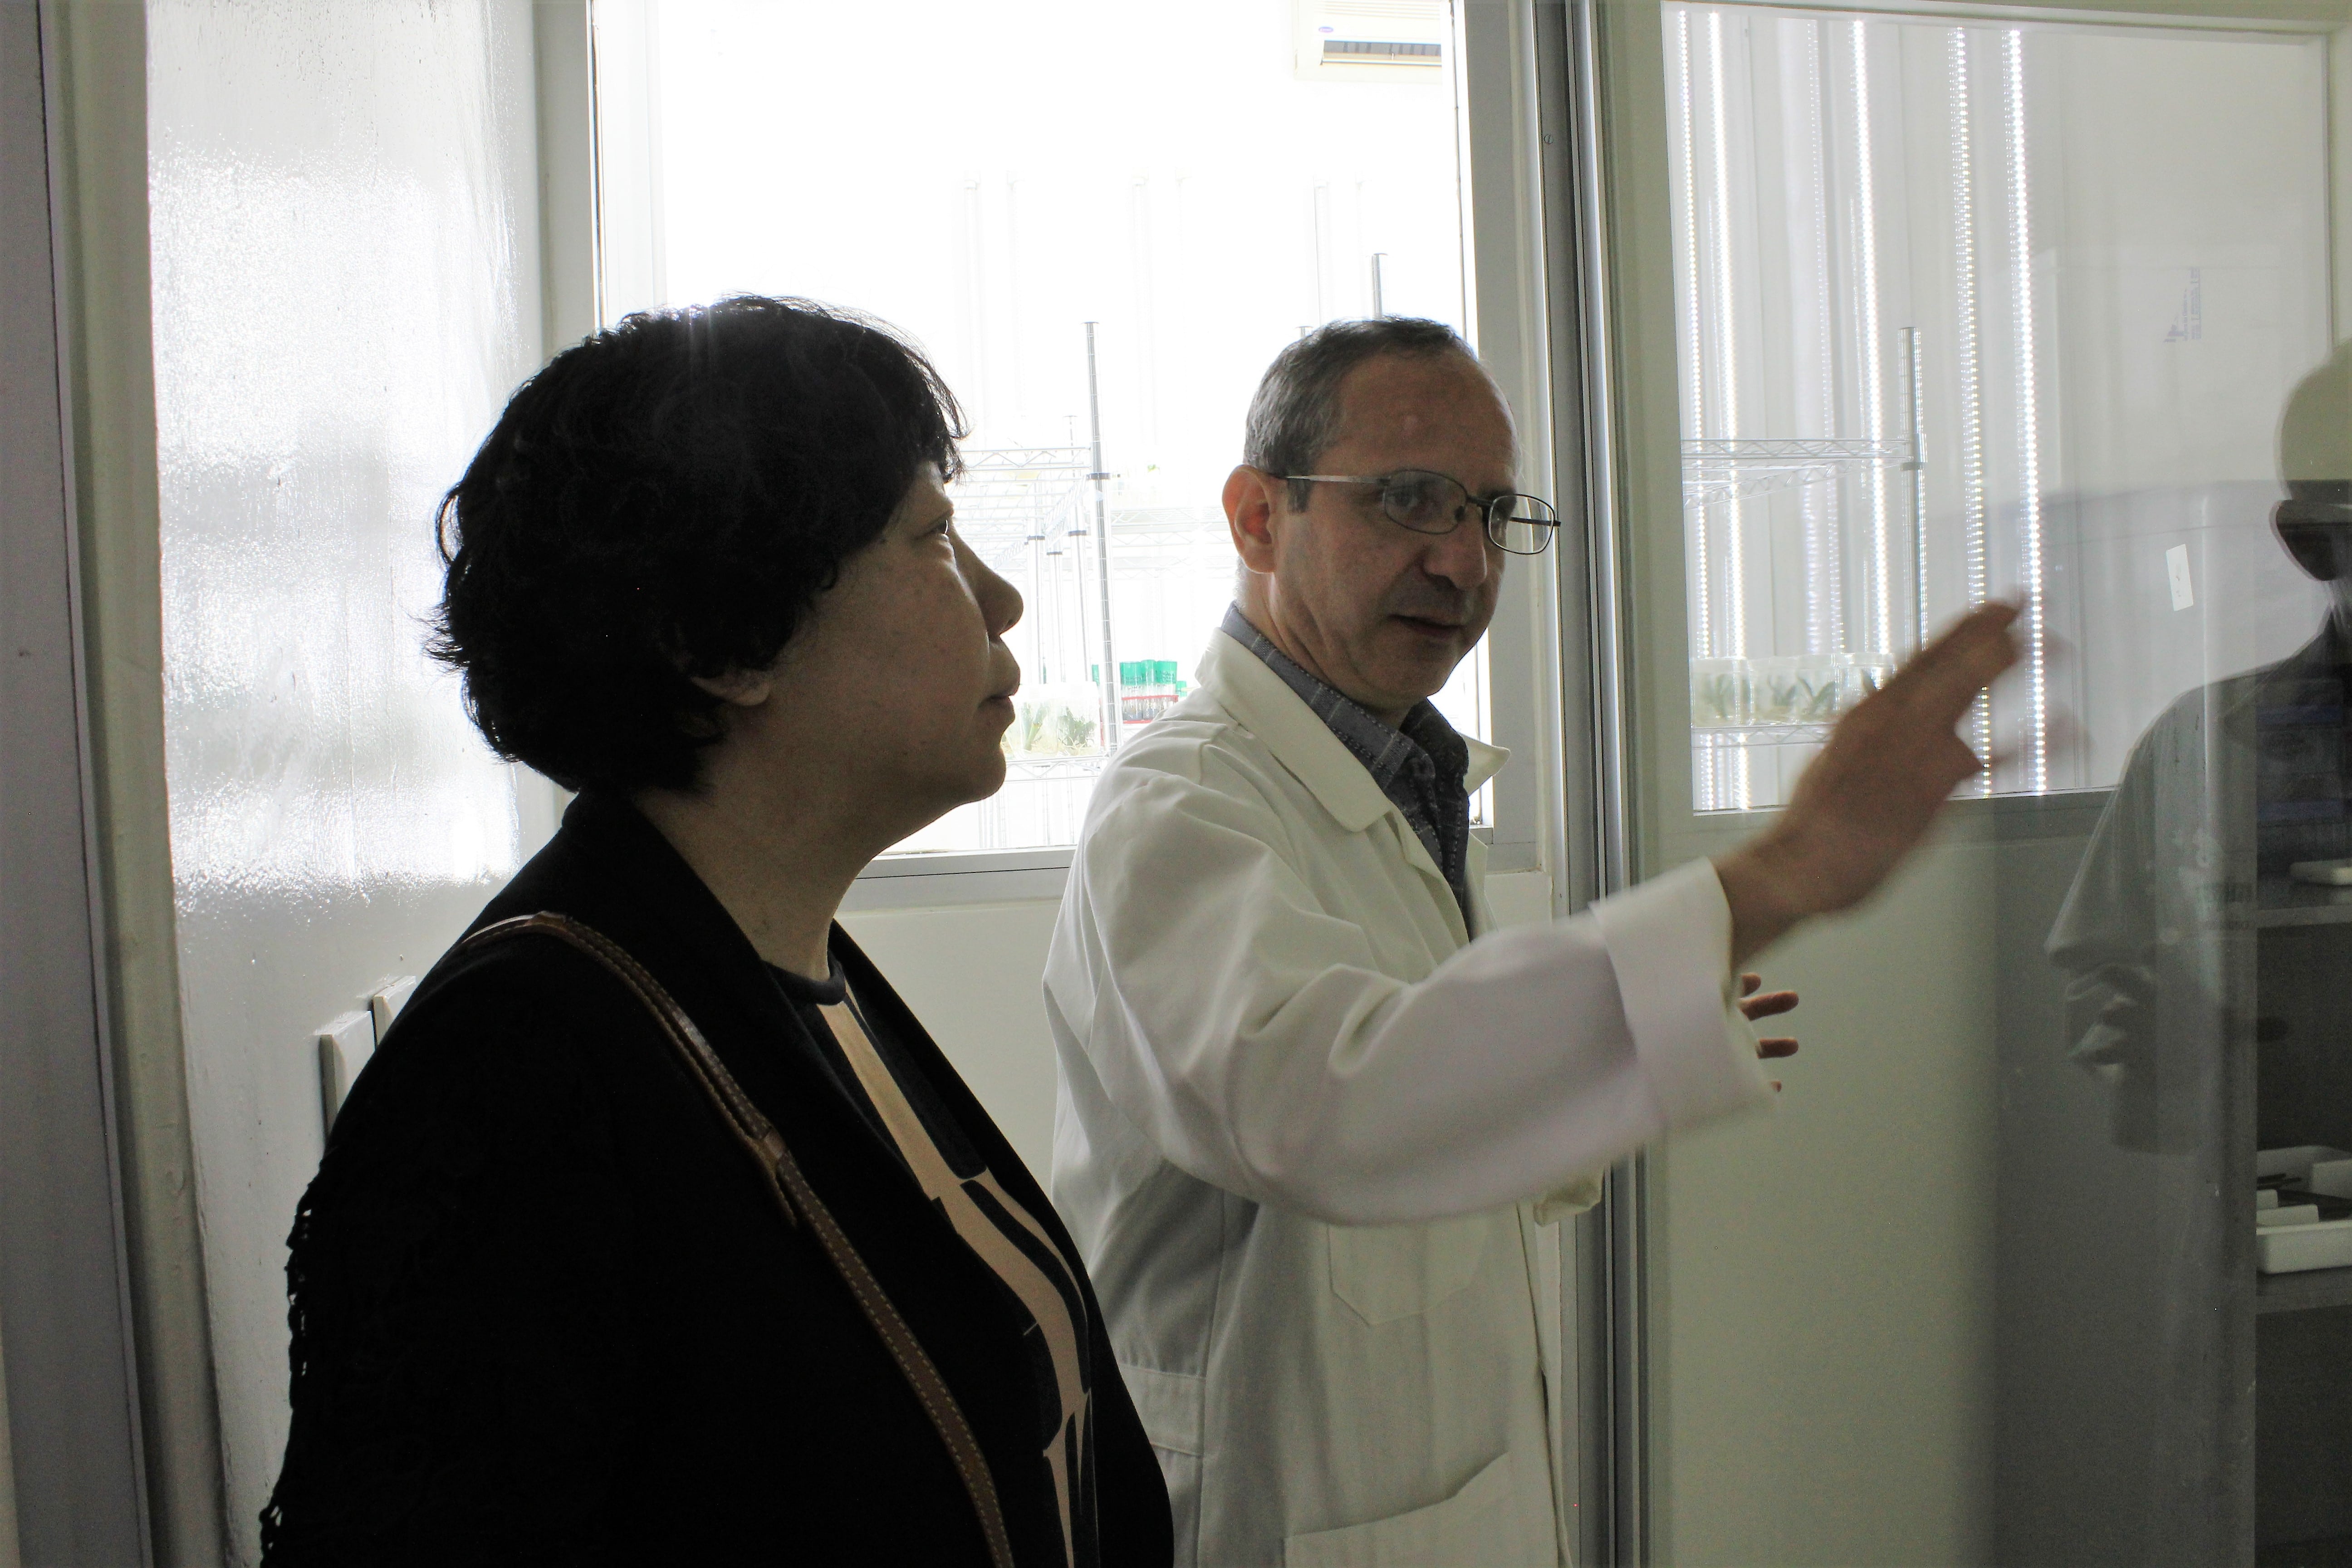 La delegación china se mostró interesada en la tecnología de las plántulas que se estudian en el laboratorio.